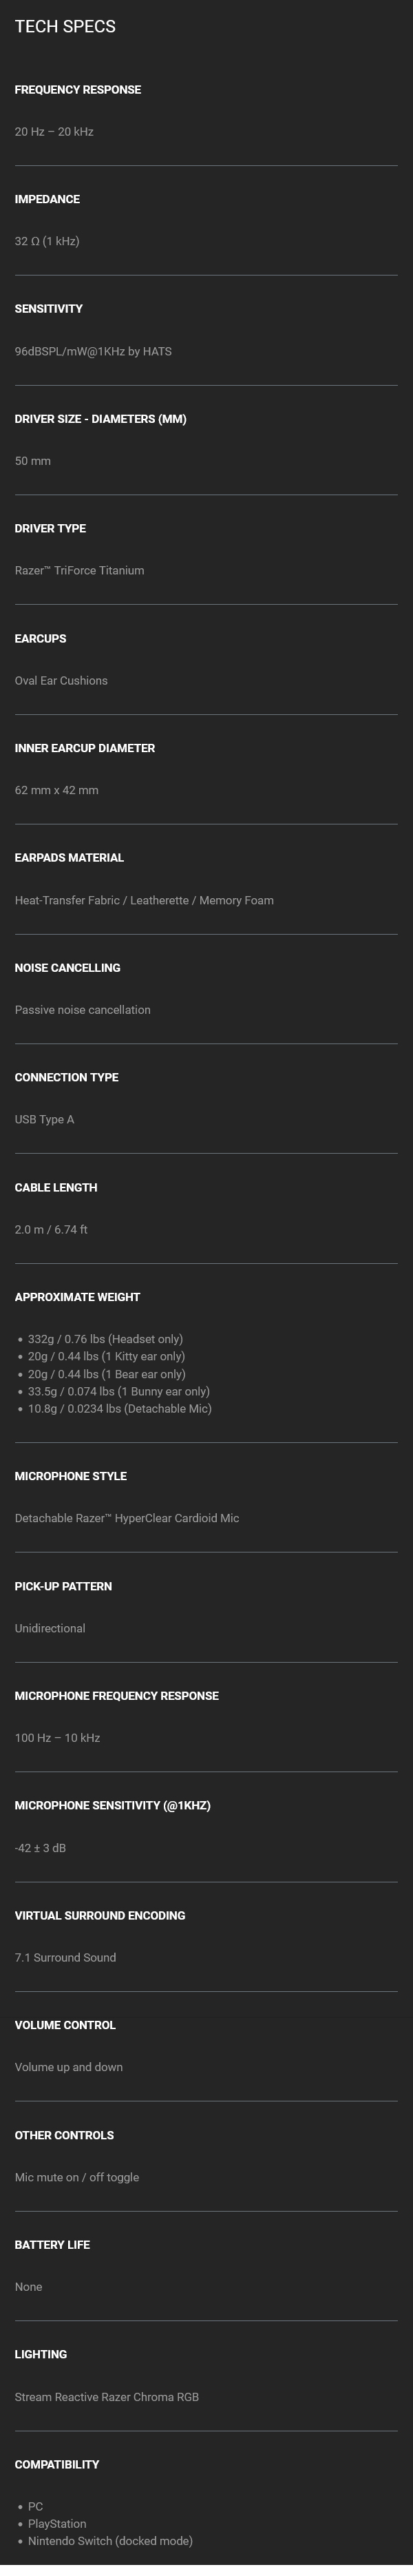 Razer Kraken Kitty V2 Pro Wired RGB Gaming Headset - Black - Specifications